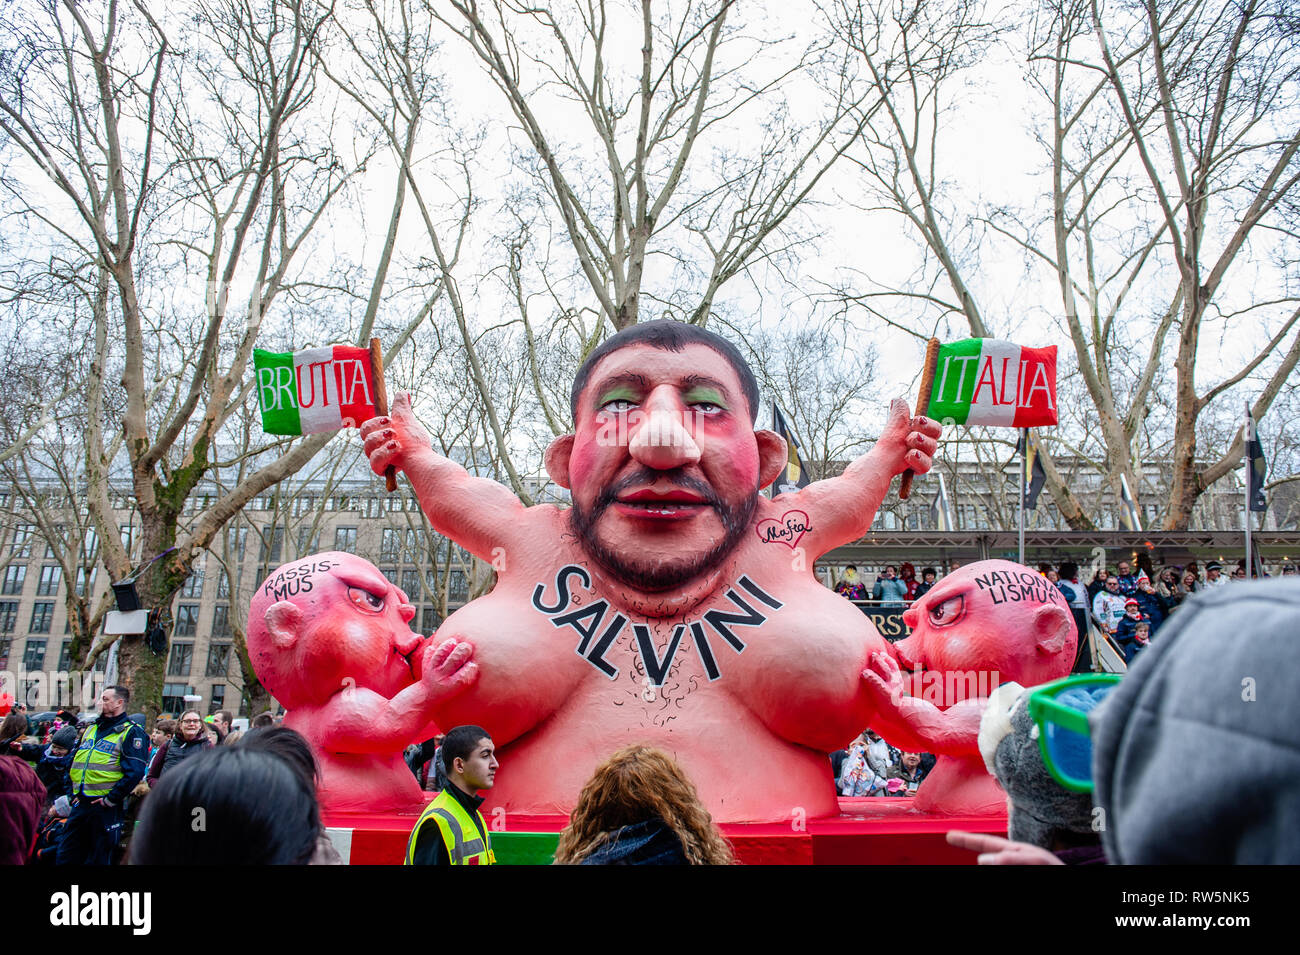 Abbildung von Salvini ist in einem der politisch themed gesehen schwebt der Satiriker Jacques Tilly während des Karnevals. In Düsseldorf, der Kalender der Karneval Veranstaltungen verfügt über nicht weniger als 300 Karneval zeigt, Bälle, Jubiläen, Empfänge und Kostüm Parteien. Das Motto dieser Saison ist "Gemeinsam Jeck" (gemeinsam Karneval). Die Feierlichkeiten ihren Höhepunkt in der Rose Montag Parade. Mehr als 30 Ensembles und 5.000 Teilnehmer an der Prozession durch die Stadt. Aufwändig gebaut und geschmückten Wagen Adresse kulturellen und politischen Fragen und Satirischen, lustigen und auch umstritten. Stockfoto